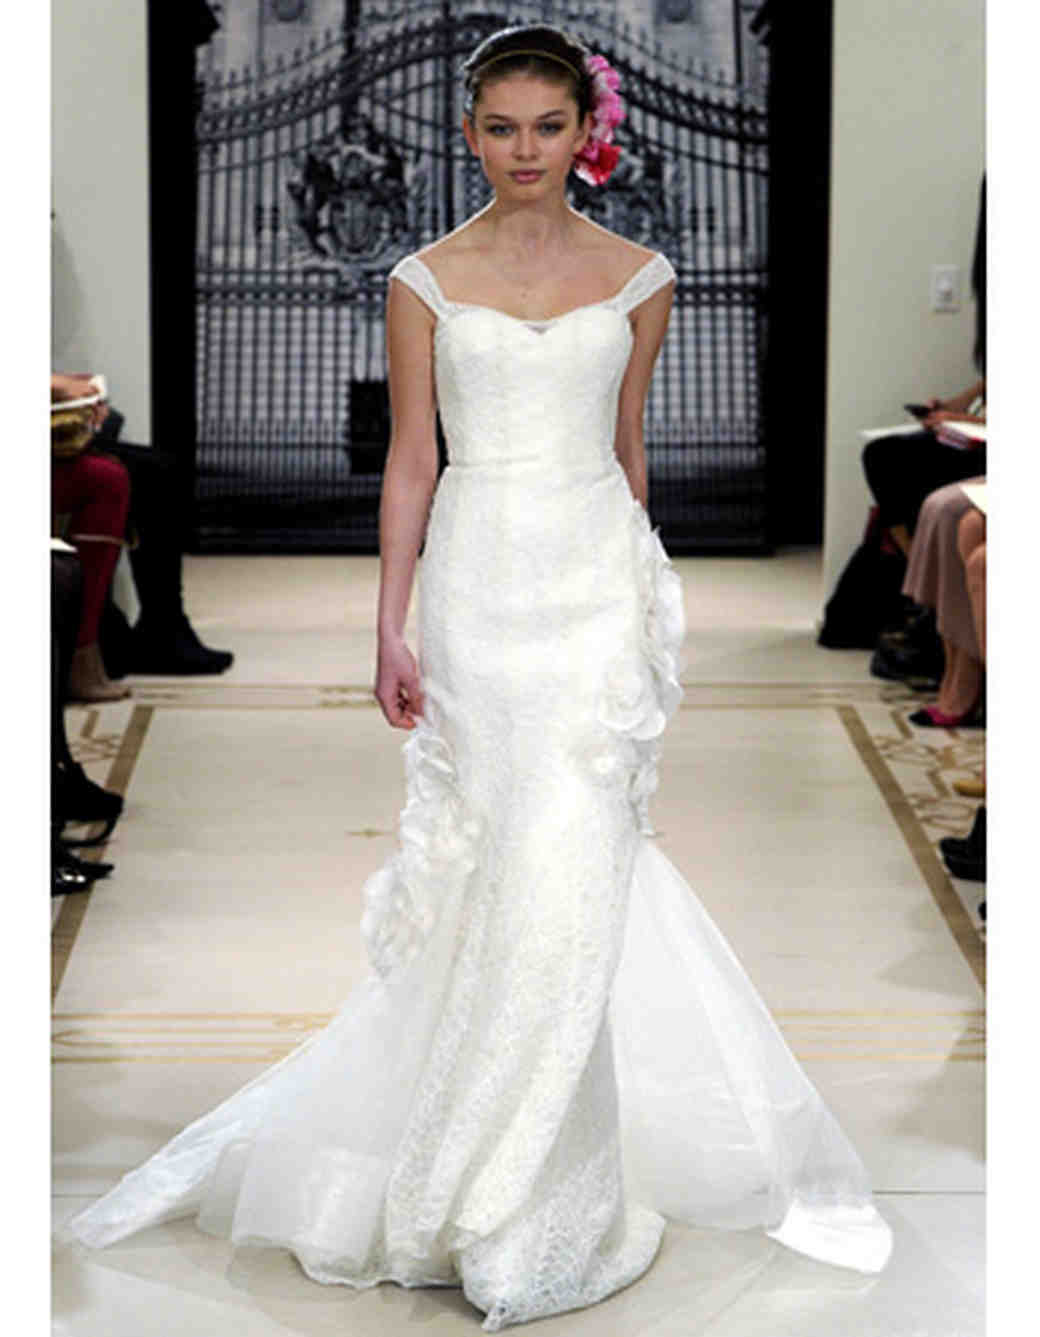 Sheath Wedding Dresses from Spring 2012 Bridal Fashion Week | Martha ...